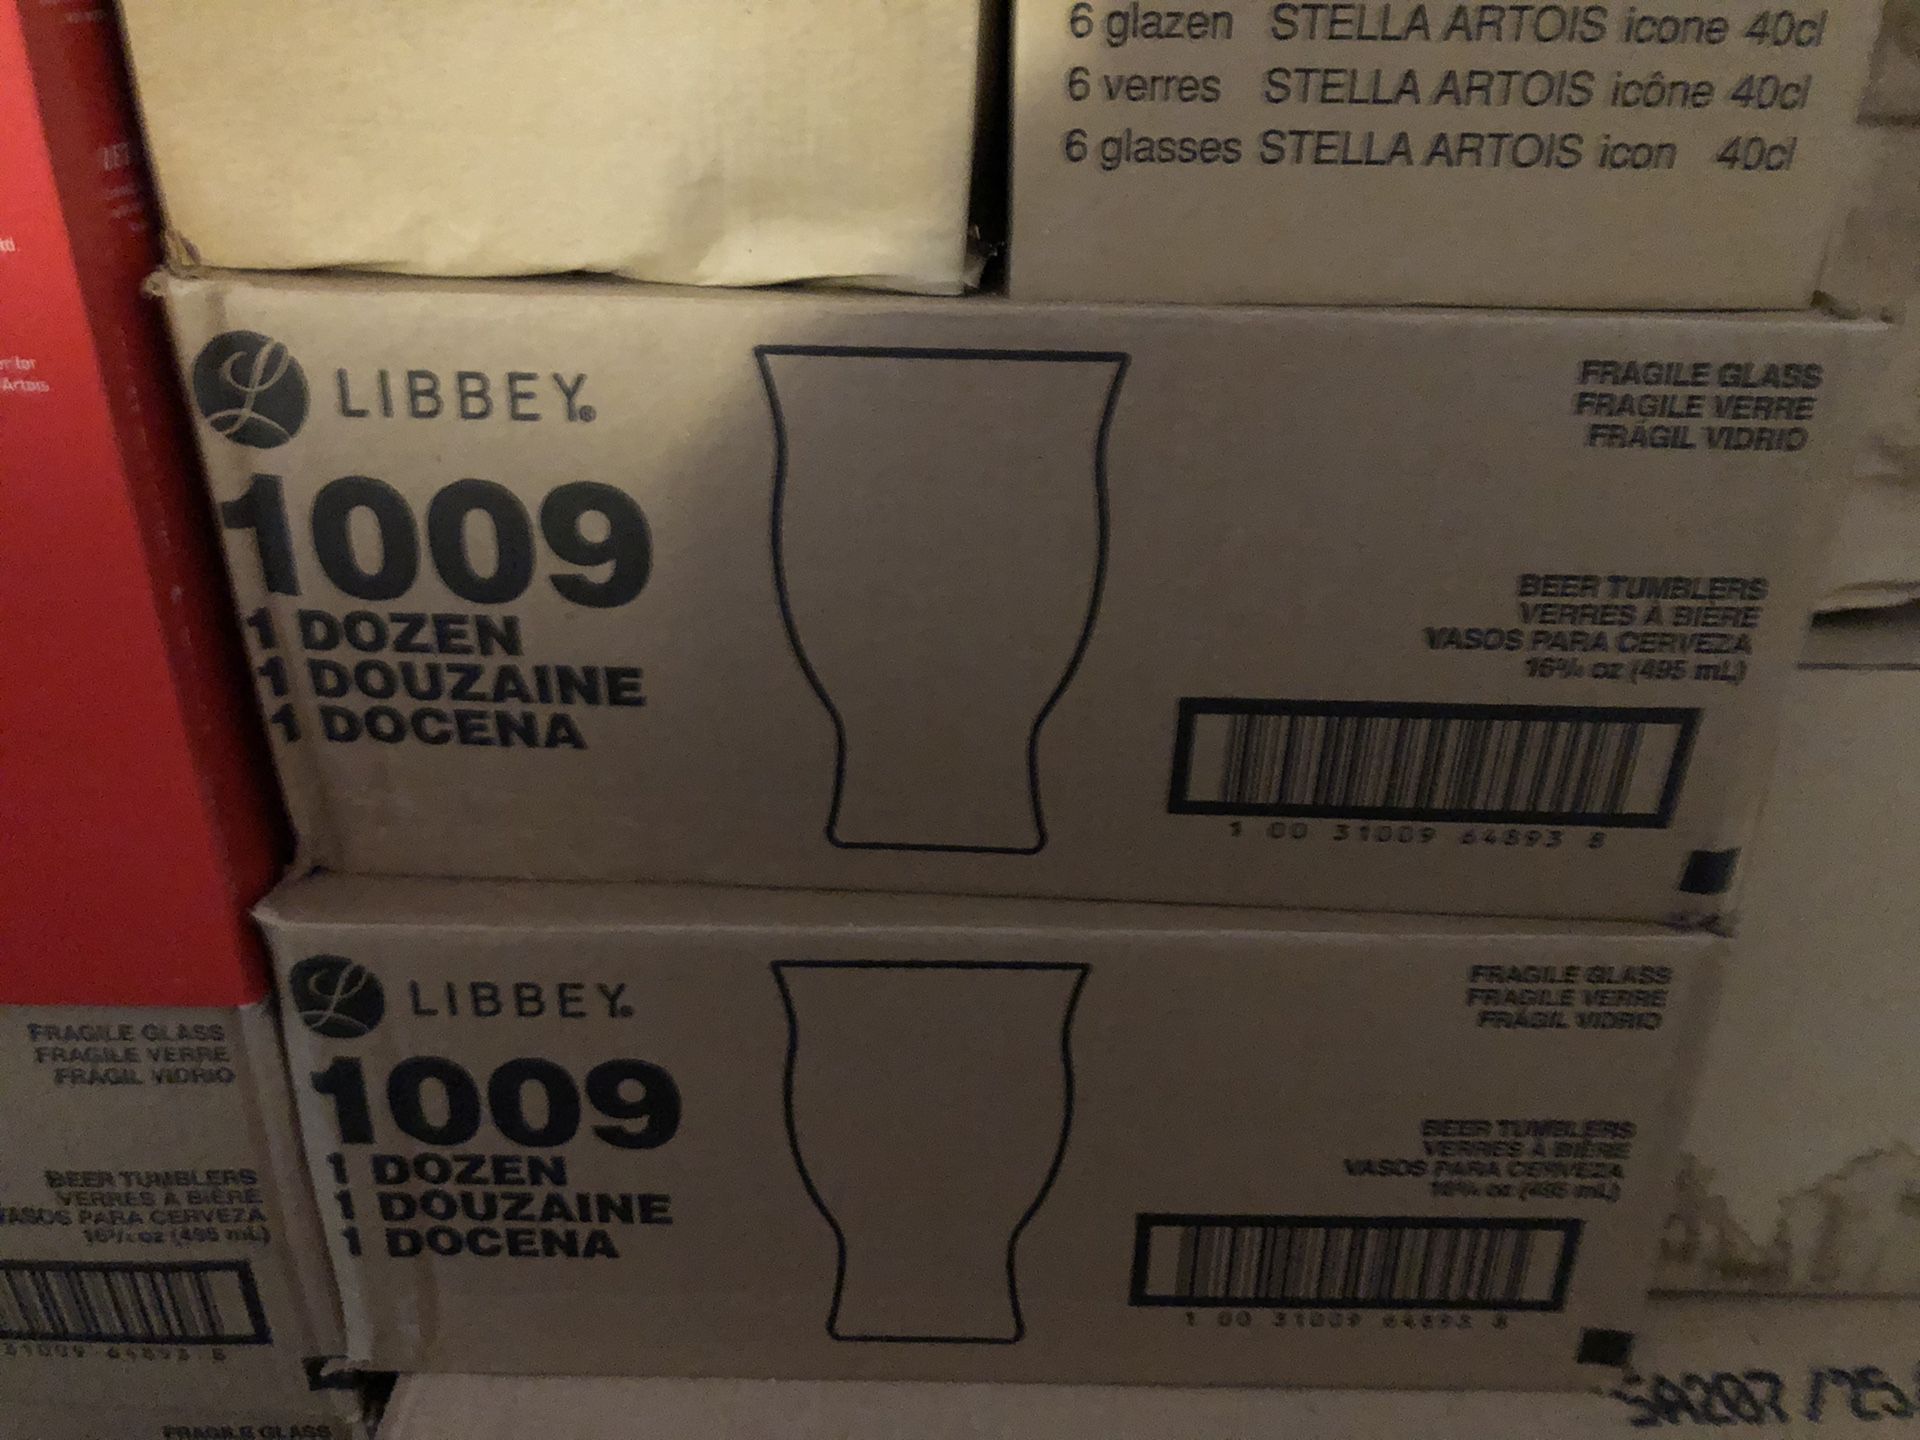 New Libbey glassware 12 glasses per box